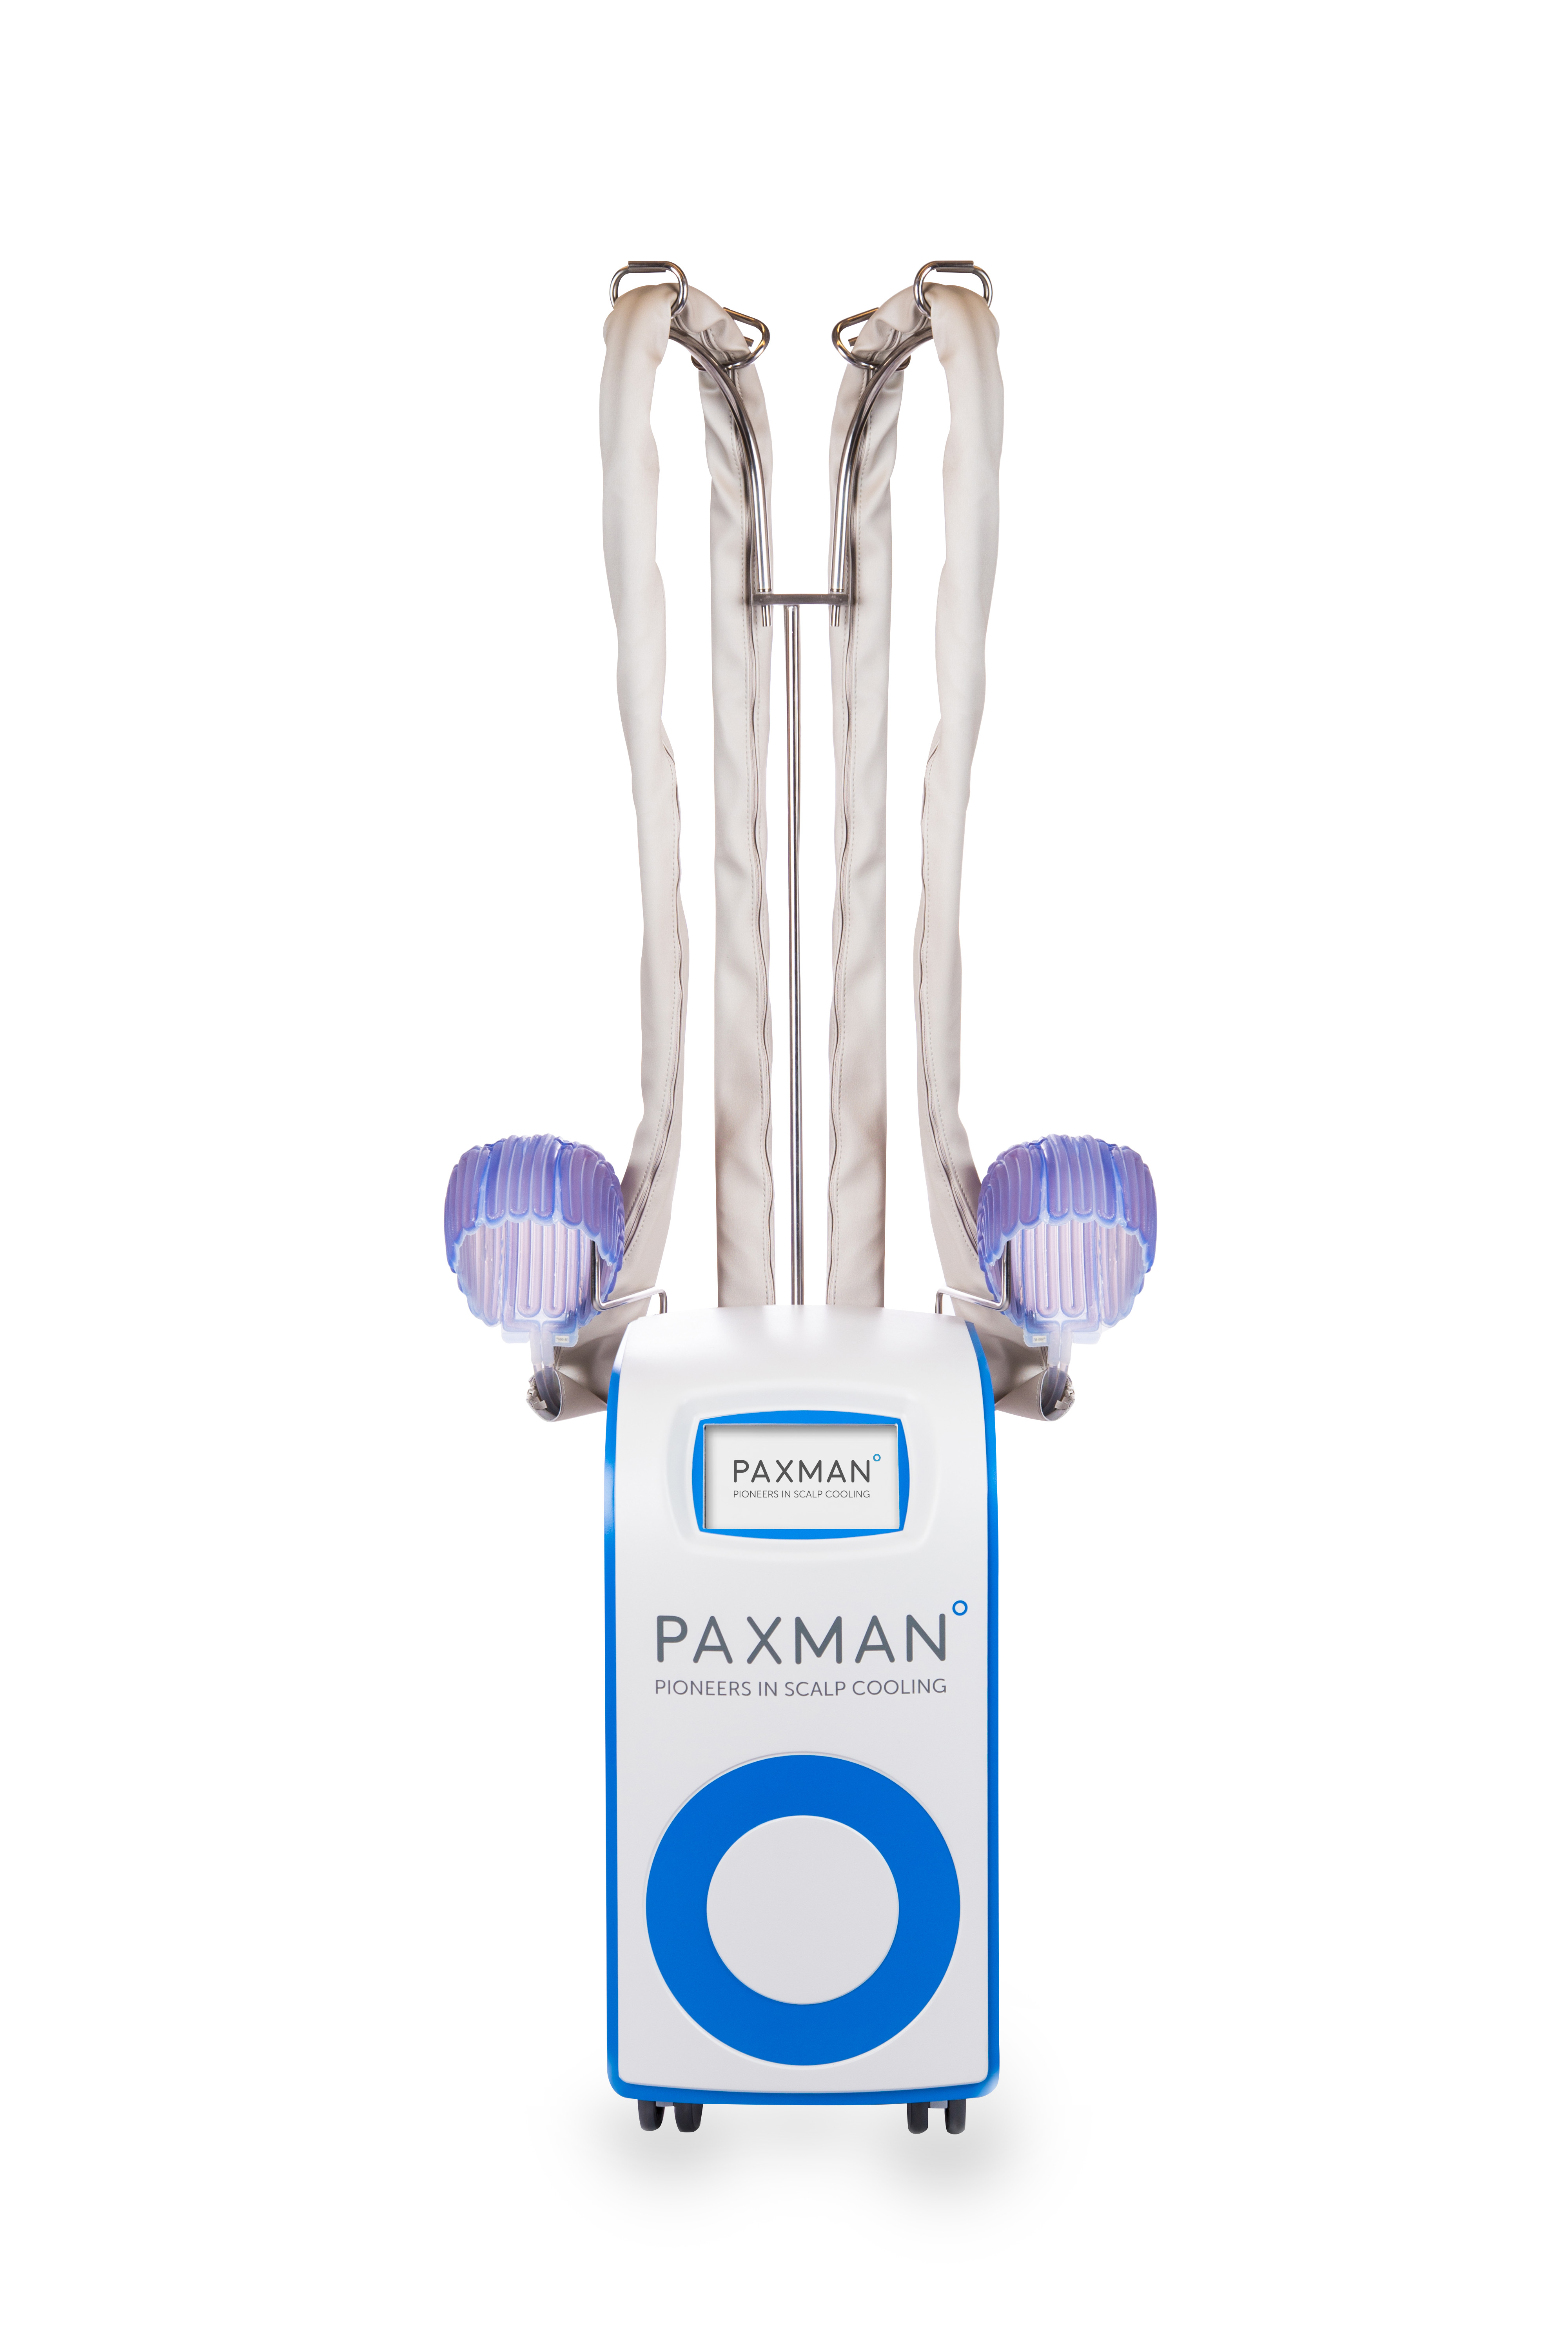 Czepki - systemy chłodzenia skóry głowy do chemioterapii Paxman Paxman